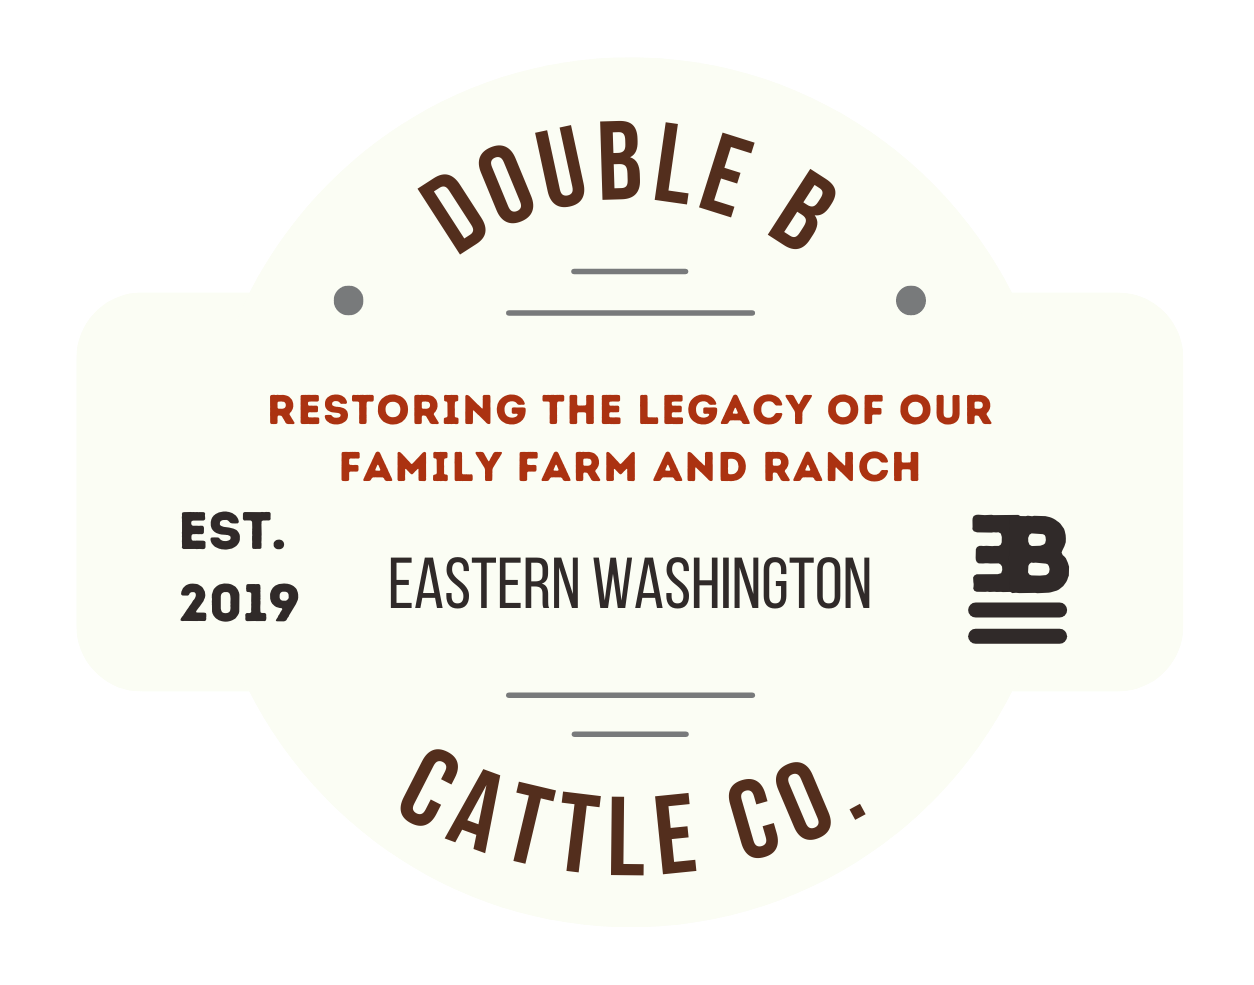 Double B Cattle Co.